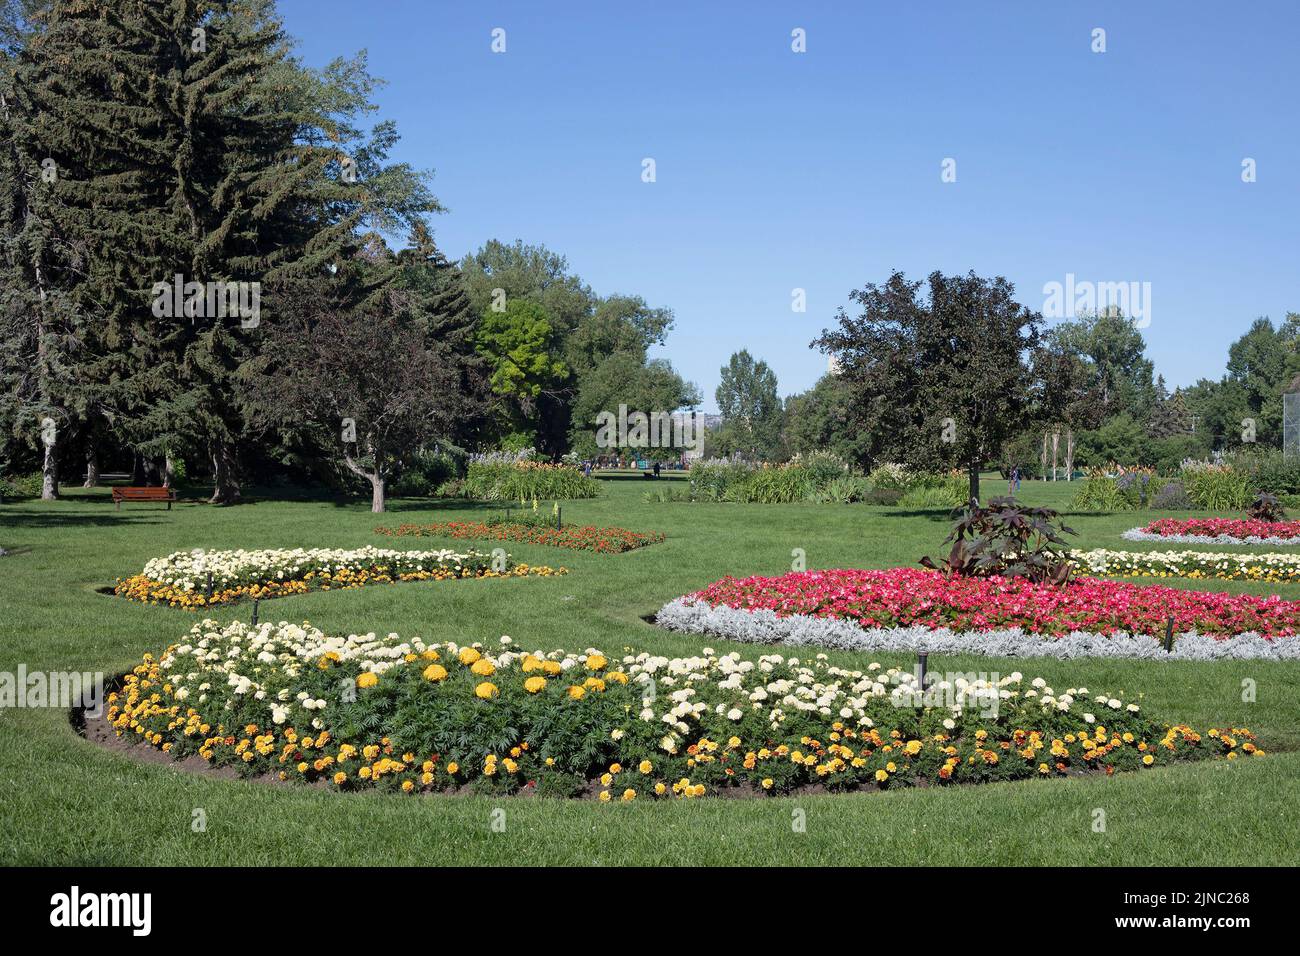 Spazio verde con giardino fiorito in un parco cittadino di quartiere in estate, Riley Park, Calgary, Alberta, Canada Foto Stock